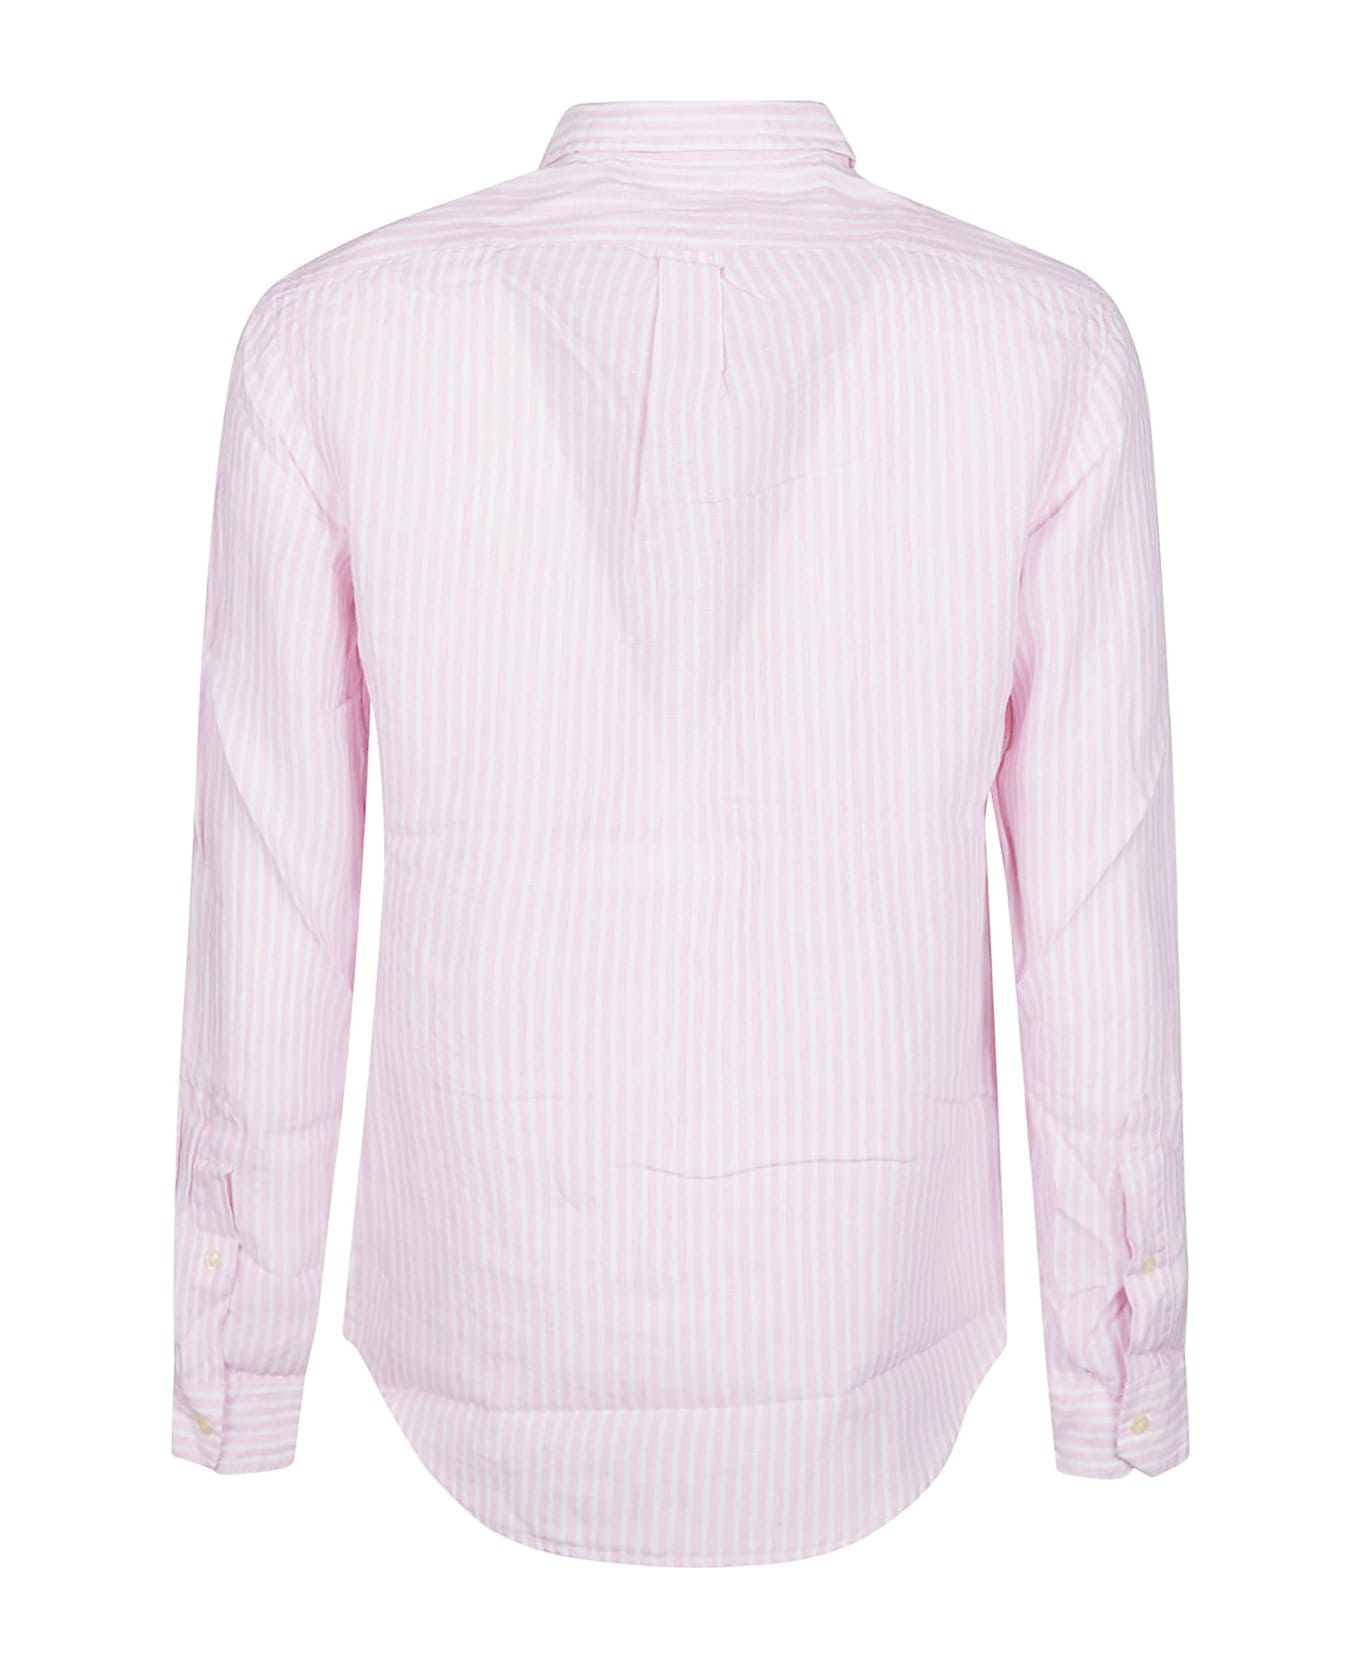 Polo Ralph Lauren Long Sleeve Sport Shirt - Pink/white